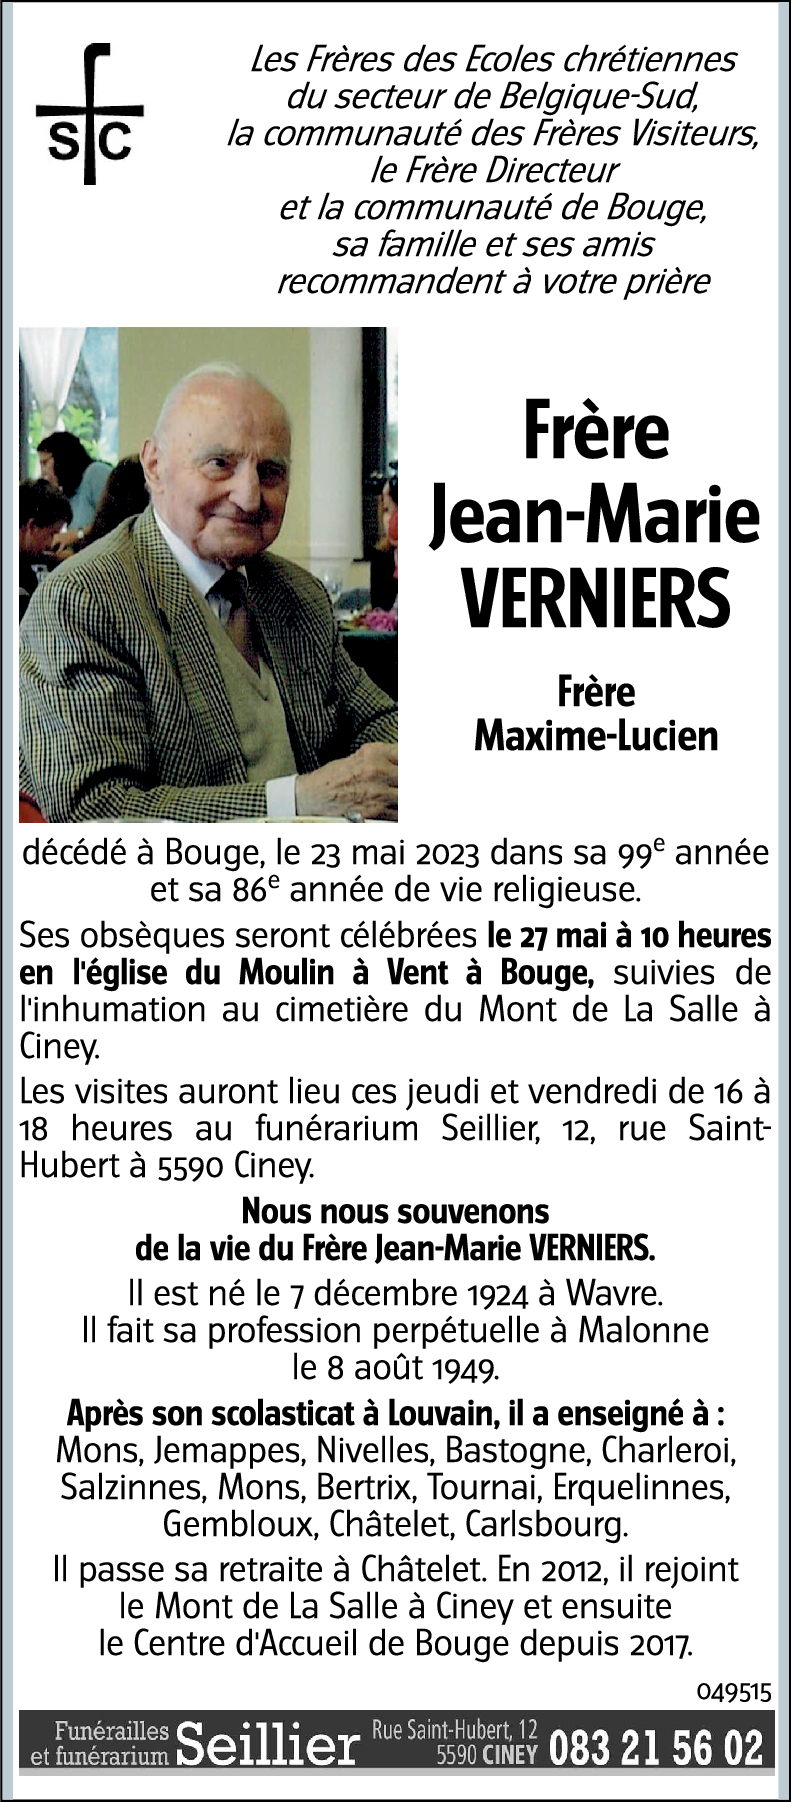 Jean-Marie VERNIERS